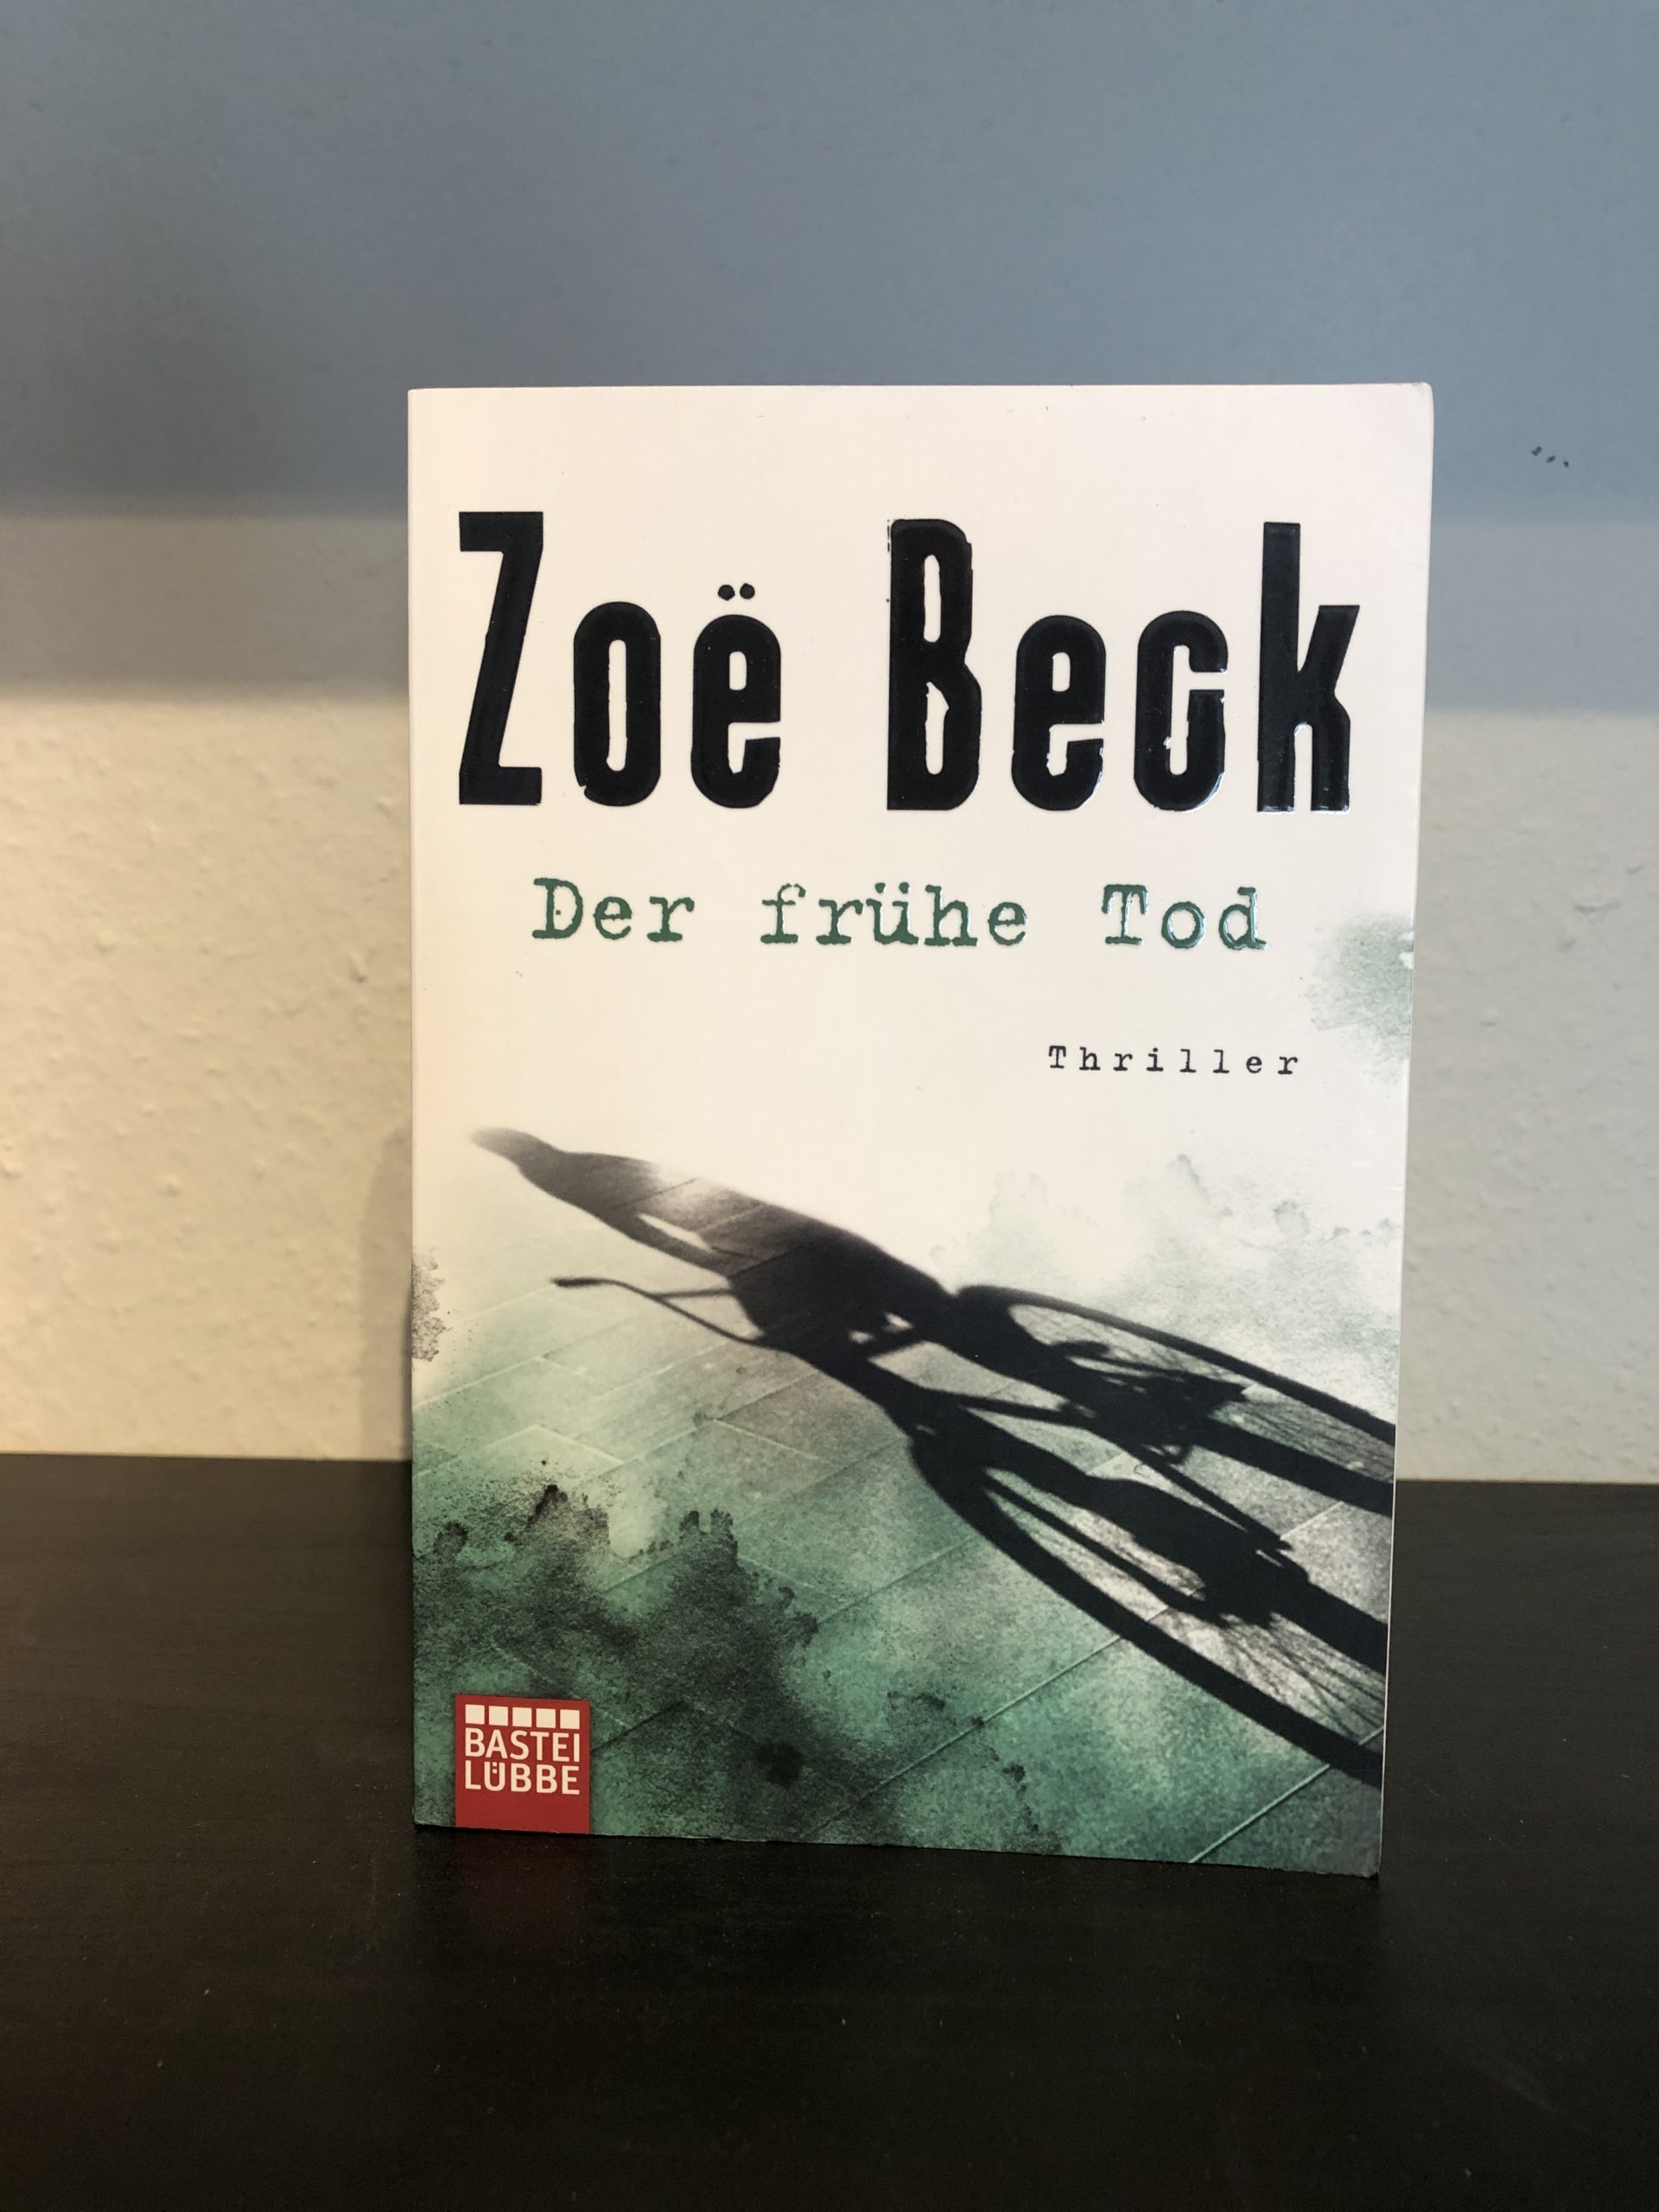 Der frühe Tod - Zoë Beck main image